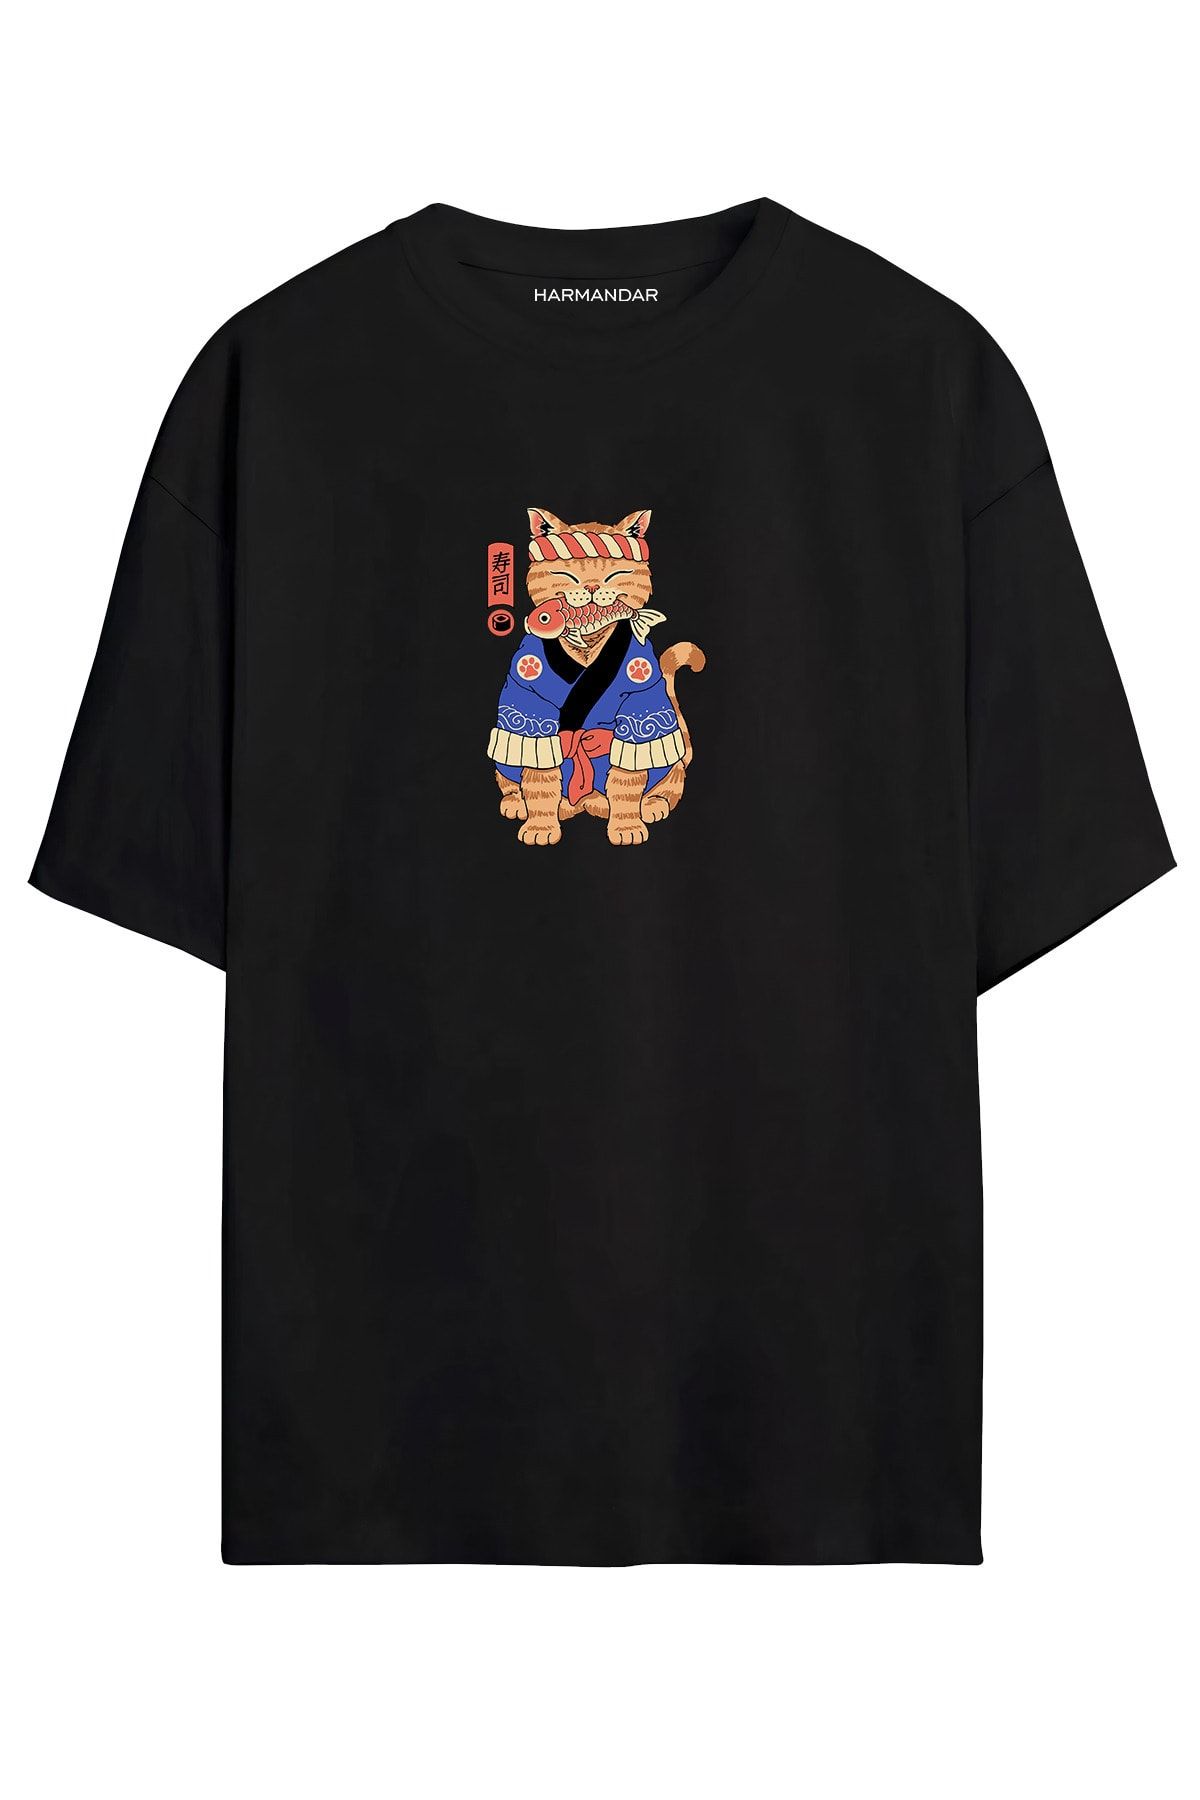 Harmandar ? Anime Kedi Baskılı Unisex Siyah Oversize T-shirt